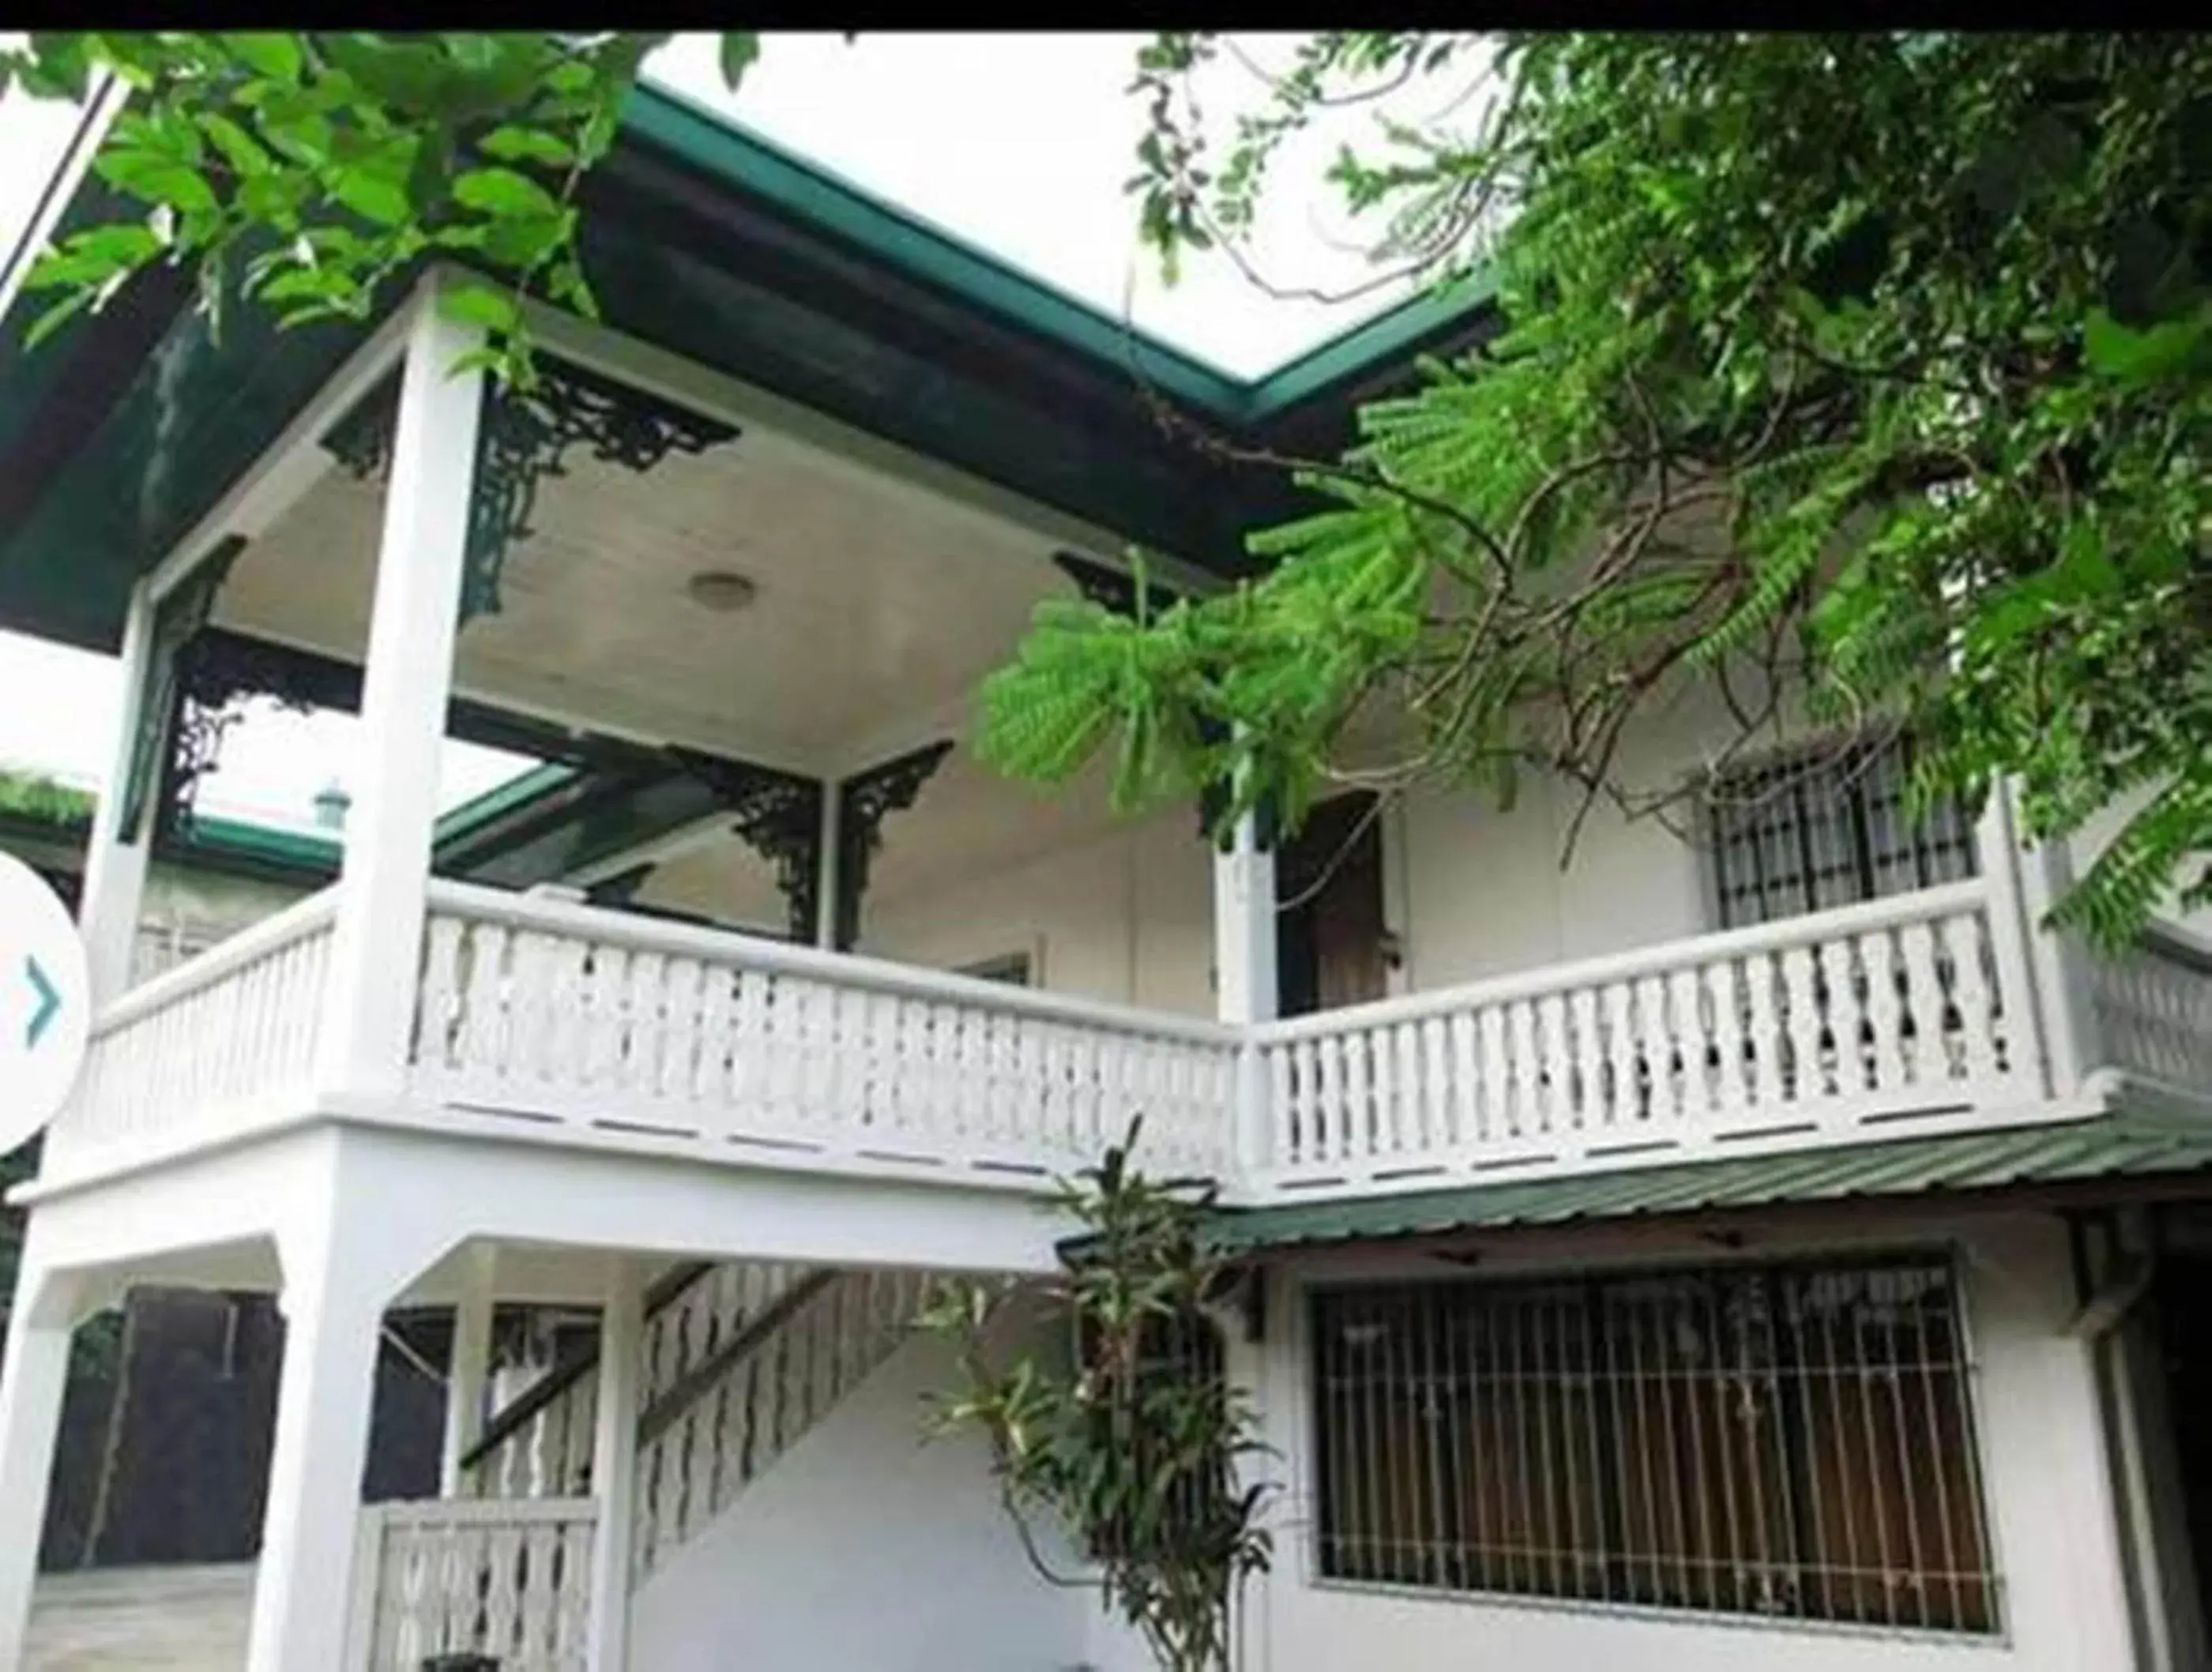 Facade/entrance, Property Building in Casa Tentay